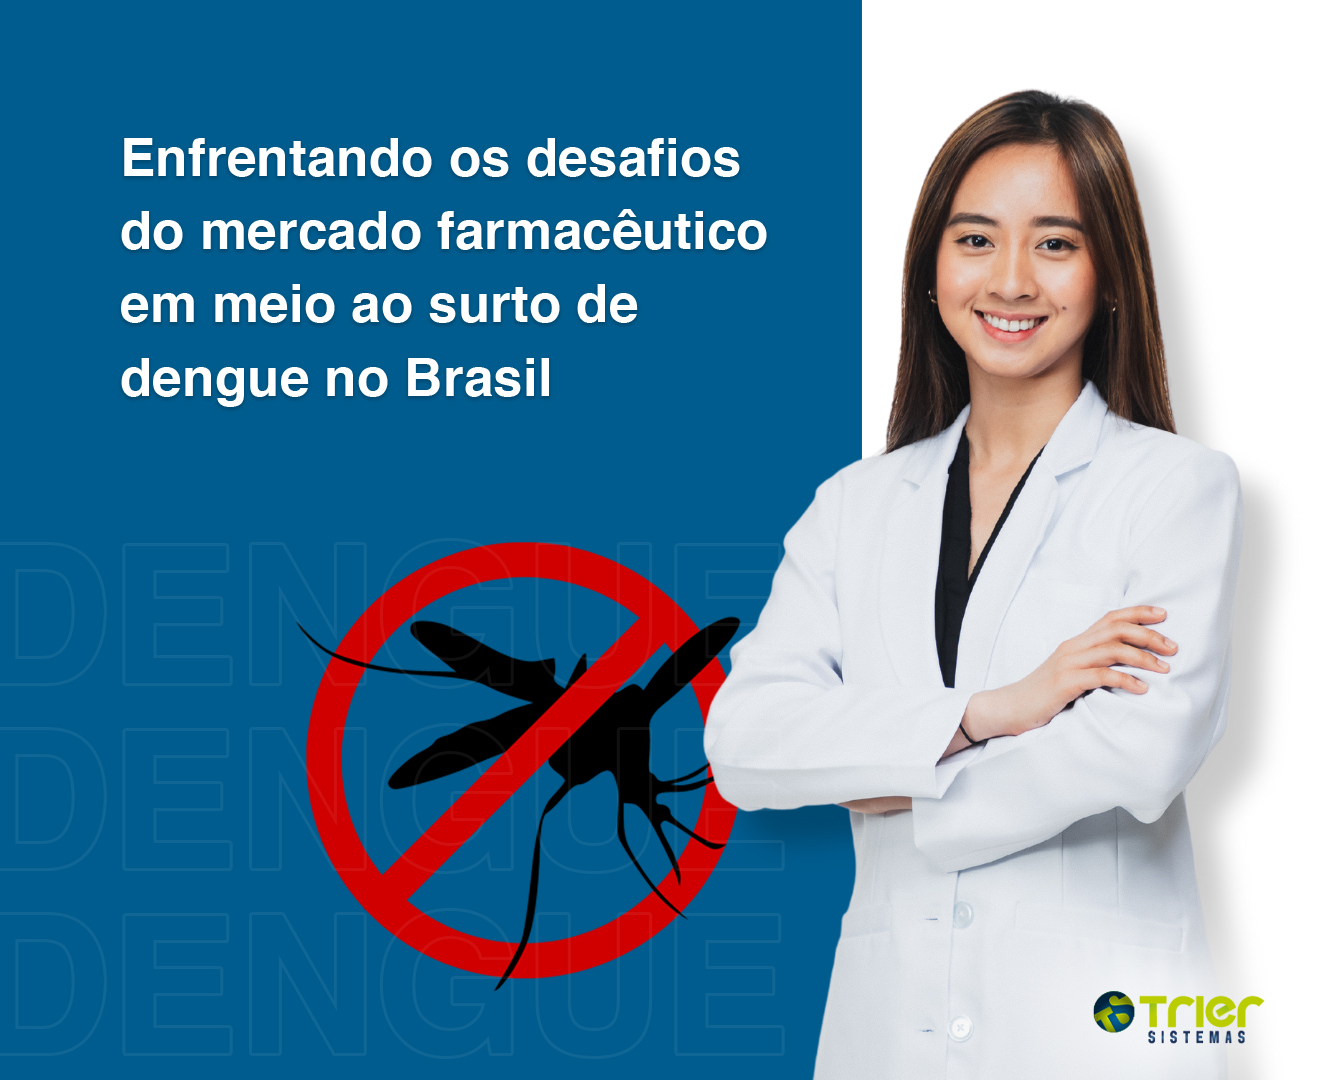 ENFRENTANDO OS DESAFIOS DO MERCADO FARMACÊUTICO EM MEIO AO SURTO DE DENGUE NO BRASIL